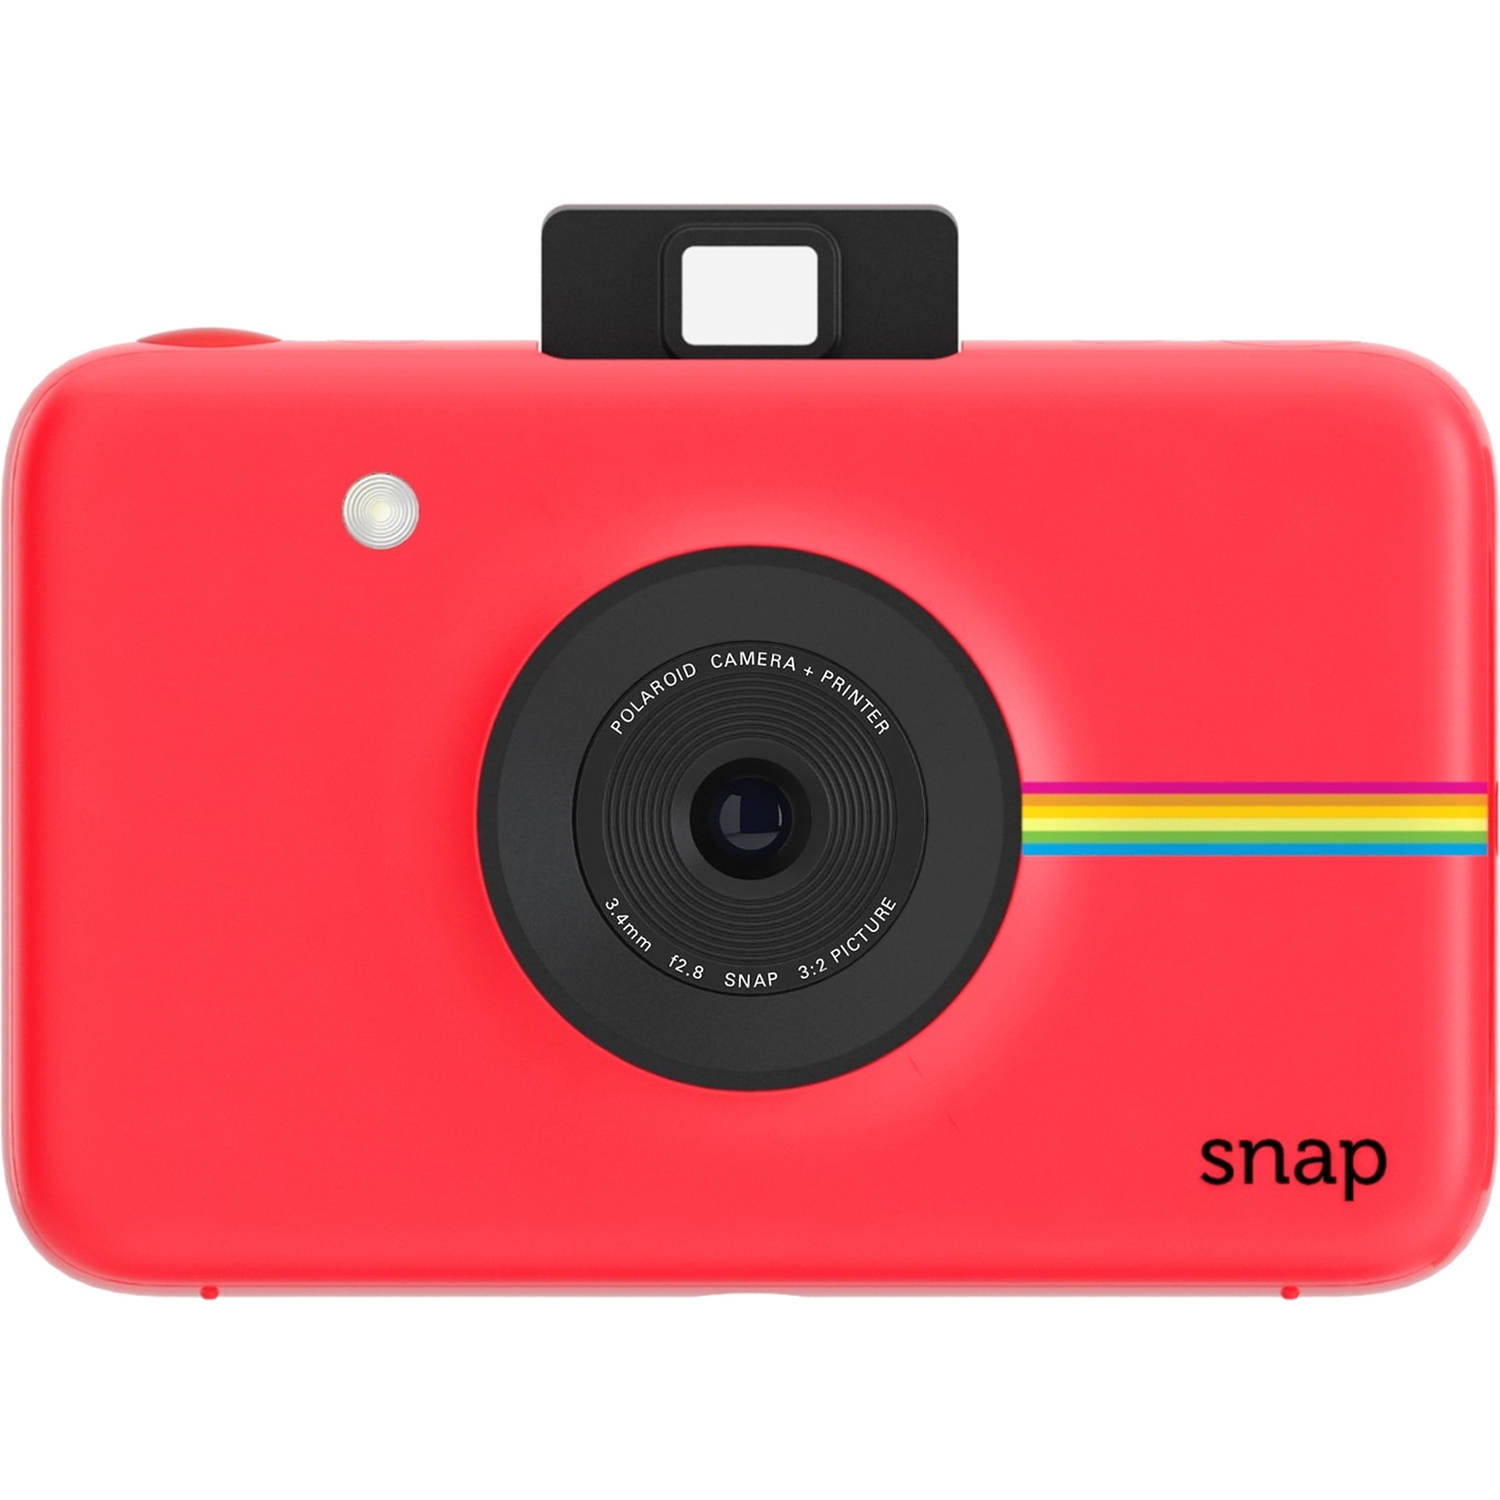 Polaroid Snap Instant Camera with 10 Megapixels - Walmart.com